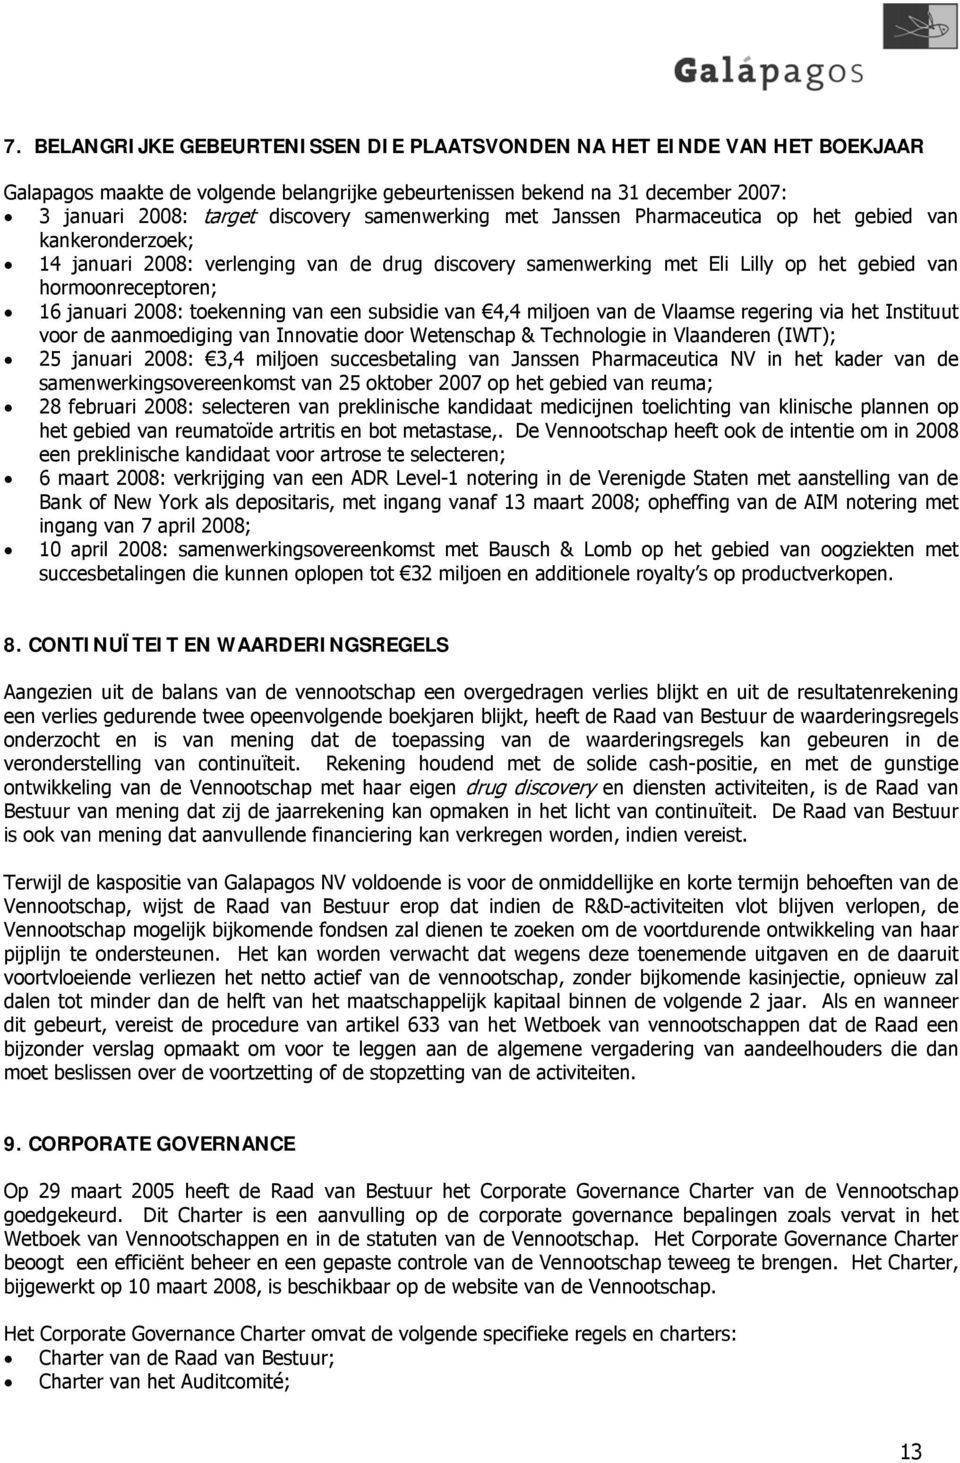 2008: toekenning van een subsidie van 4,4 miljoen van de Vlaamse regering via het Instituut voor de aanmoediging van Innovatie door Wetenschap & Technologie in Vlaanderen (IWT); 25 januari 2008: 3,4